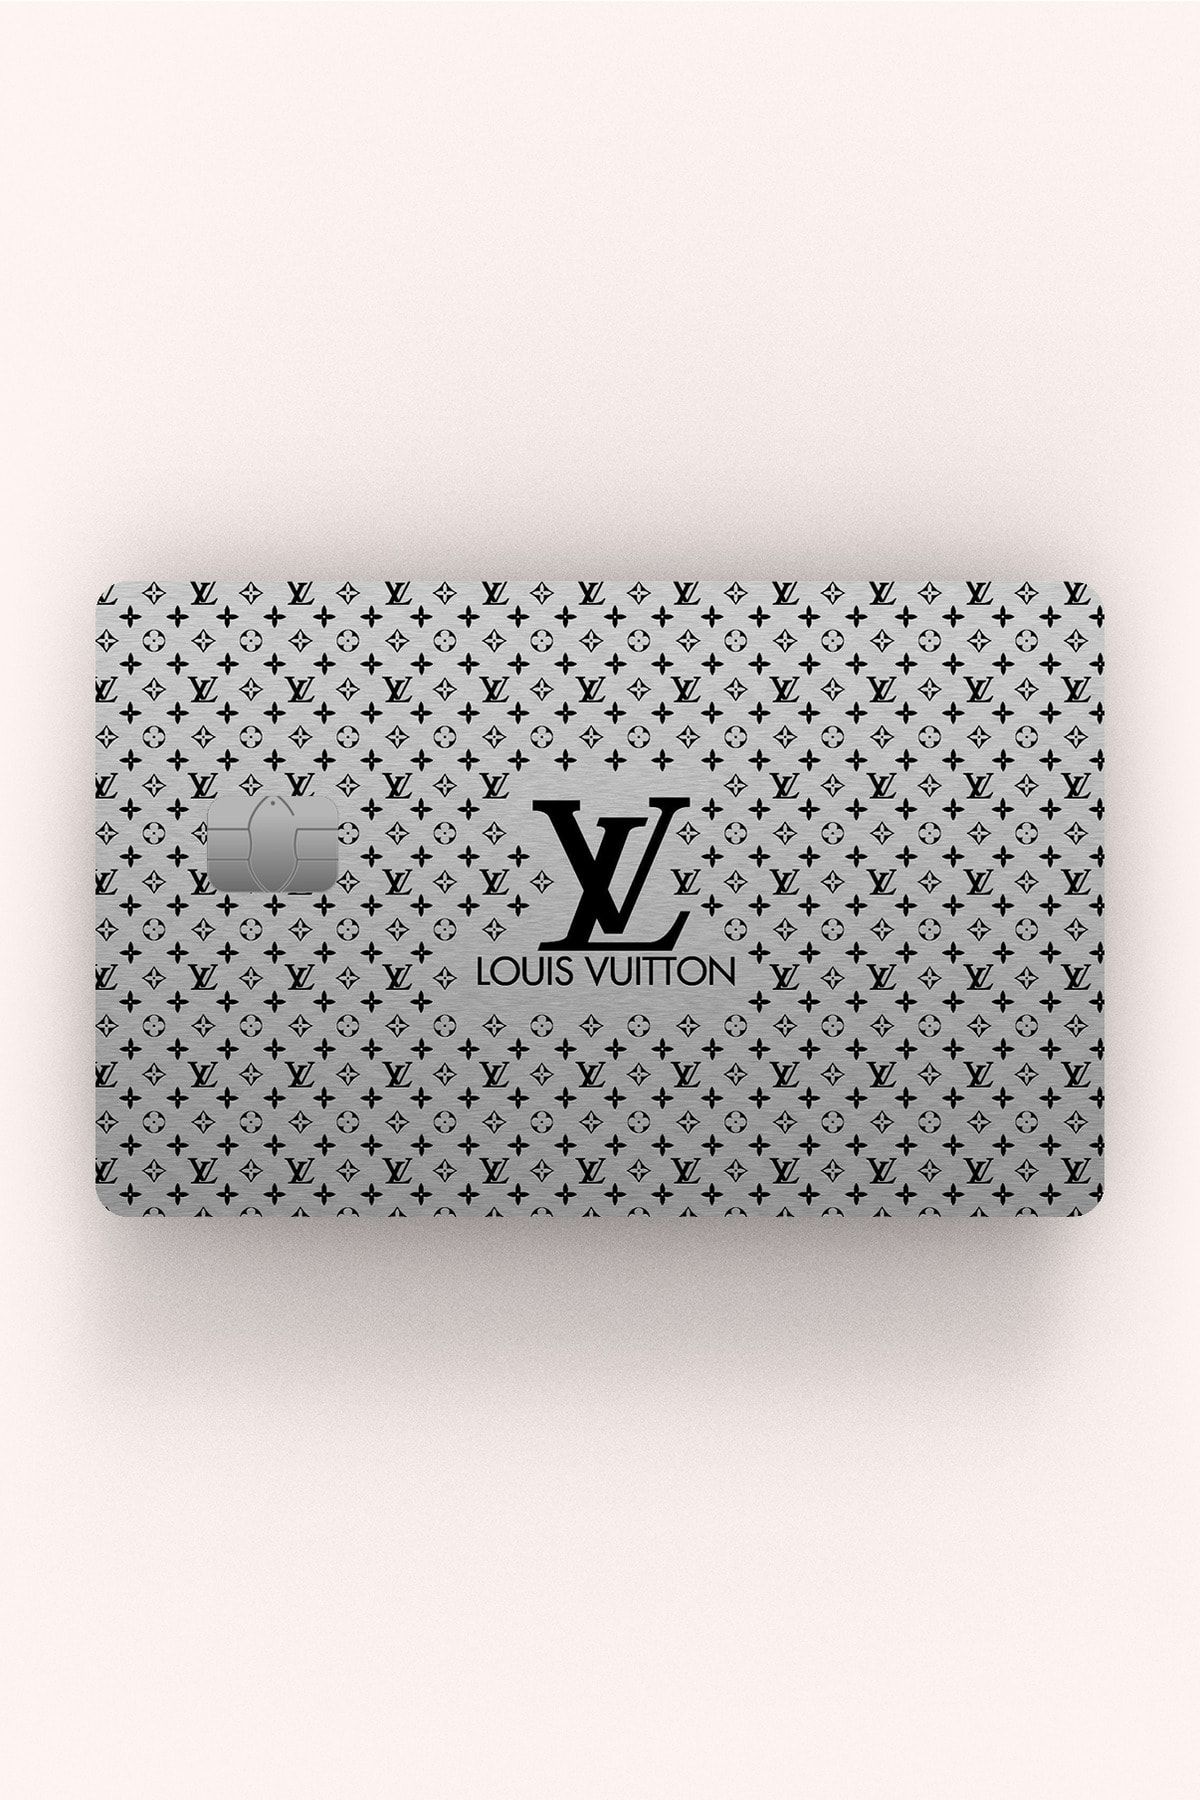 Namgo Louis Vuitton Gümüş Gri - Çipli/çipsiz Kredi Kartı Sticker Kaplama  Fiyatı, Yorumları - Trendyol